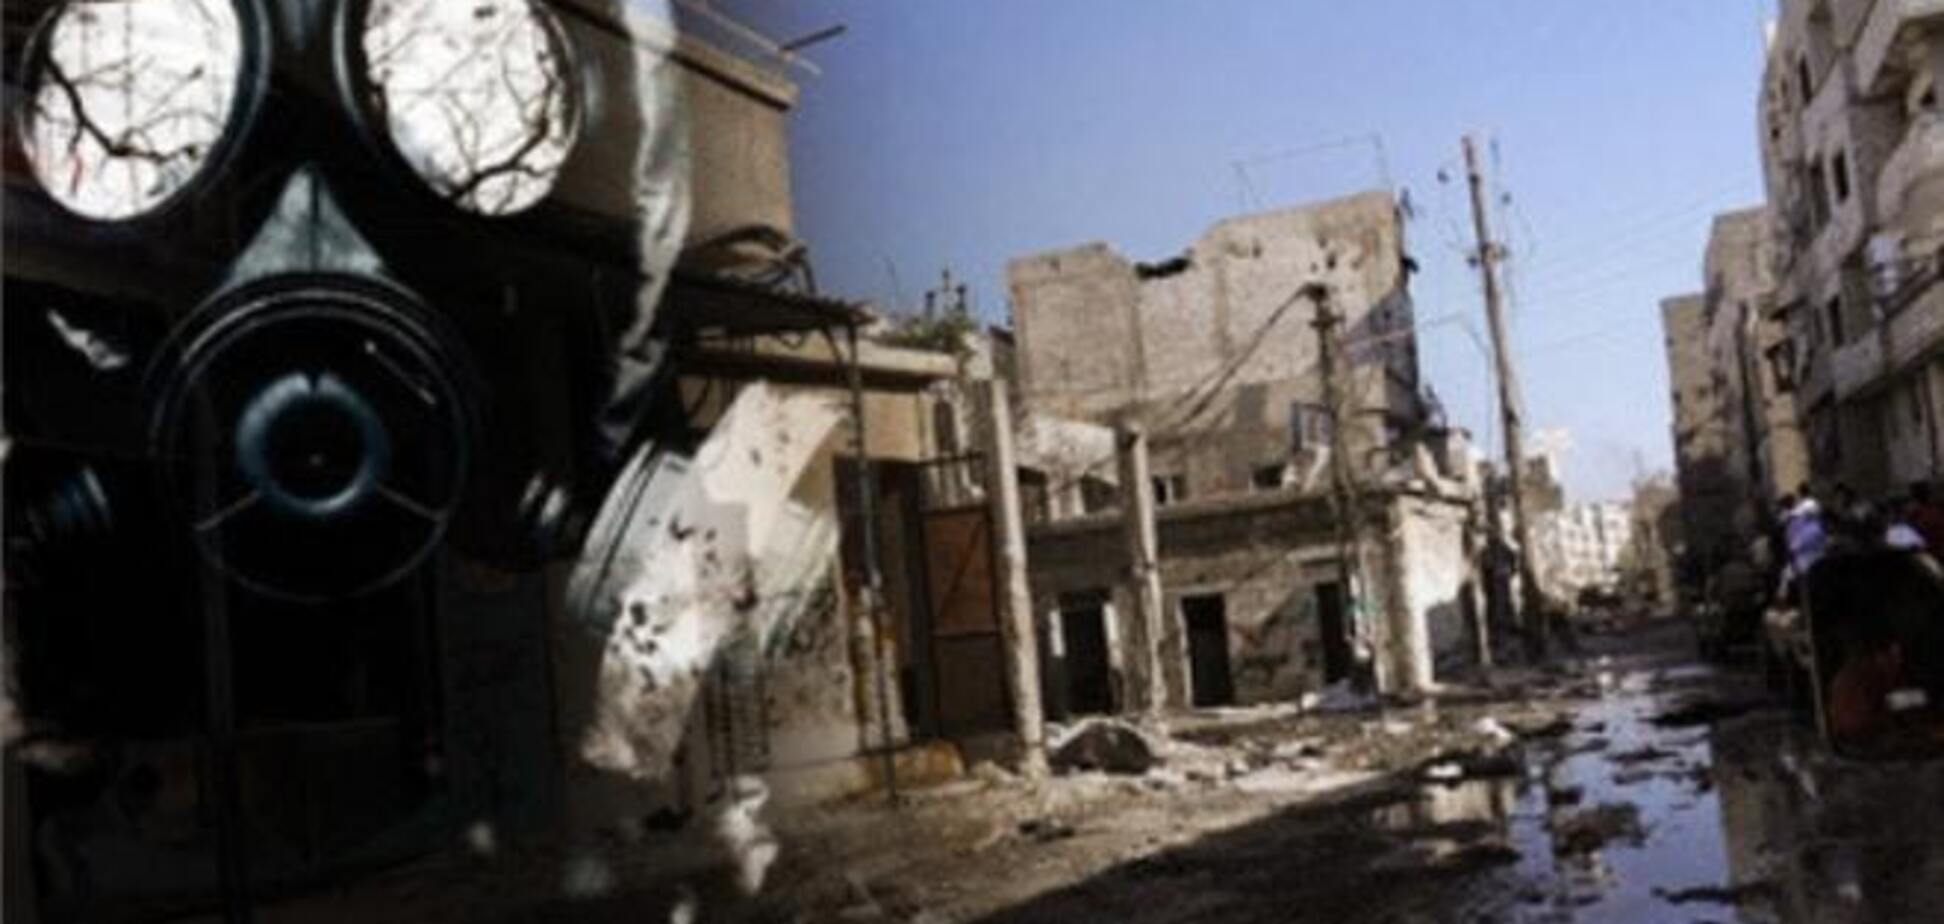 ЗМІ: під Дамаском в ході хімічної атаки загинули від 280 до 500 осіб